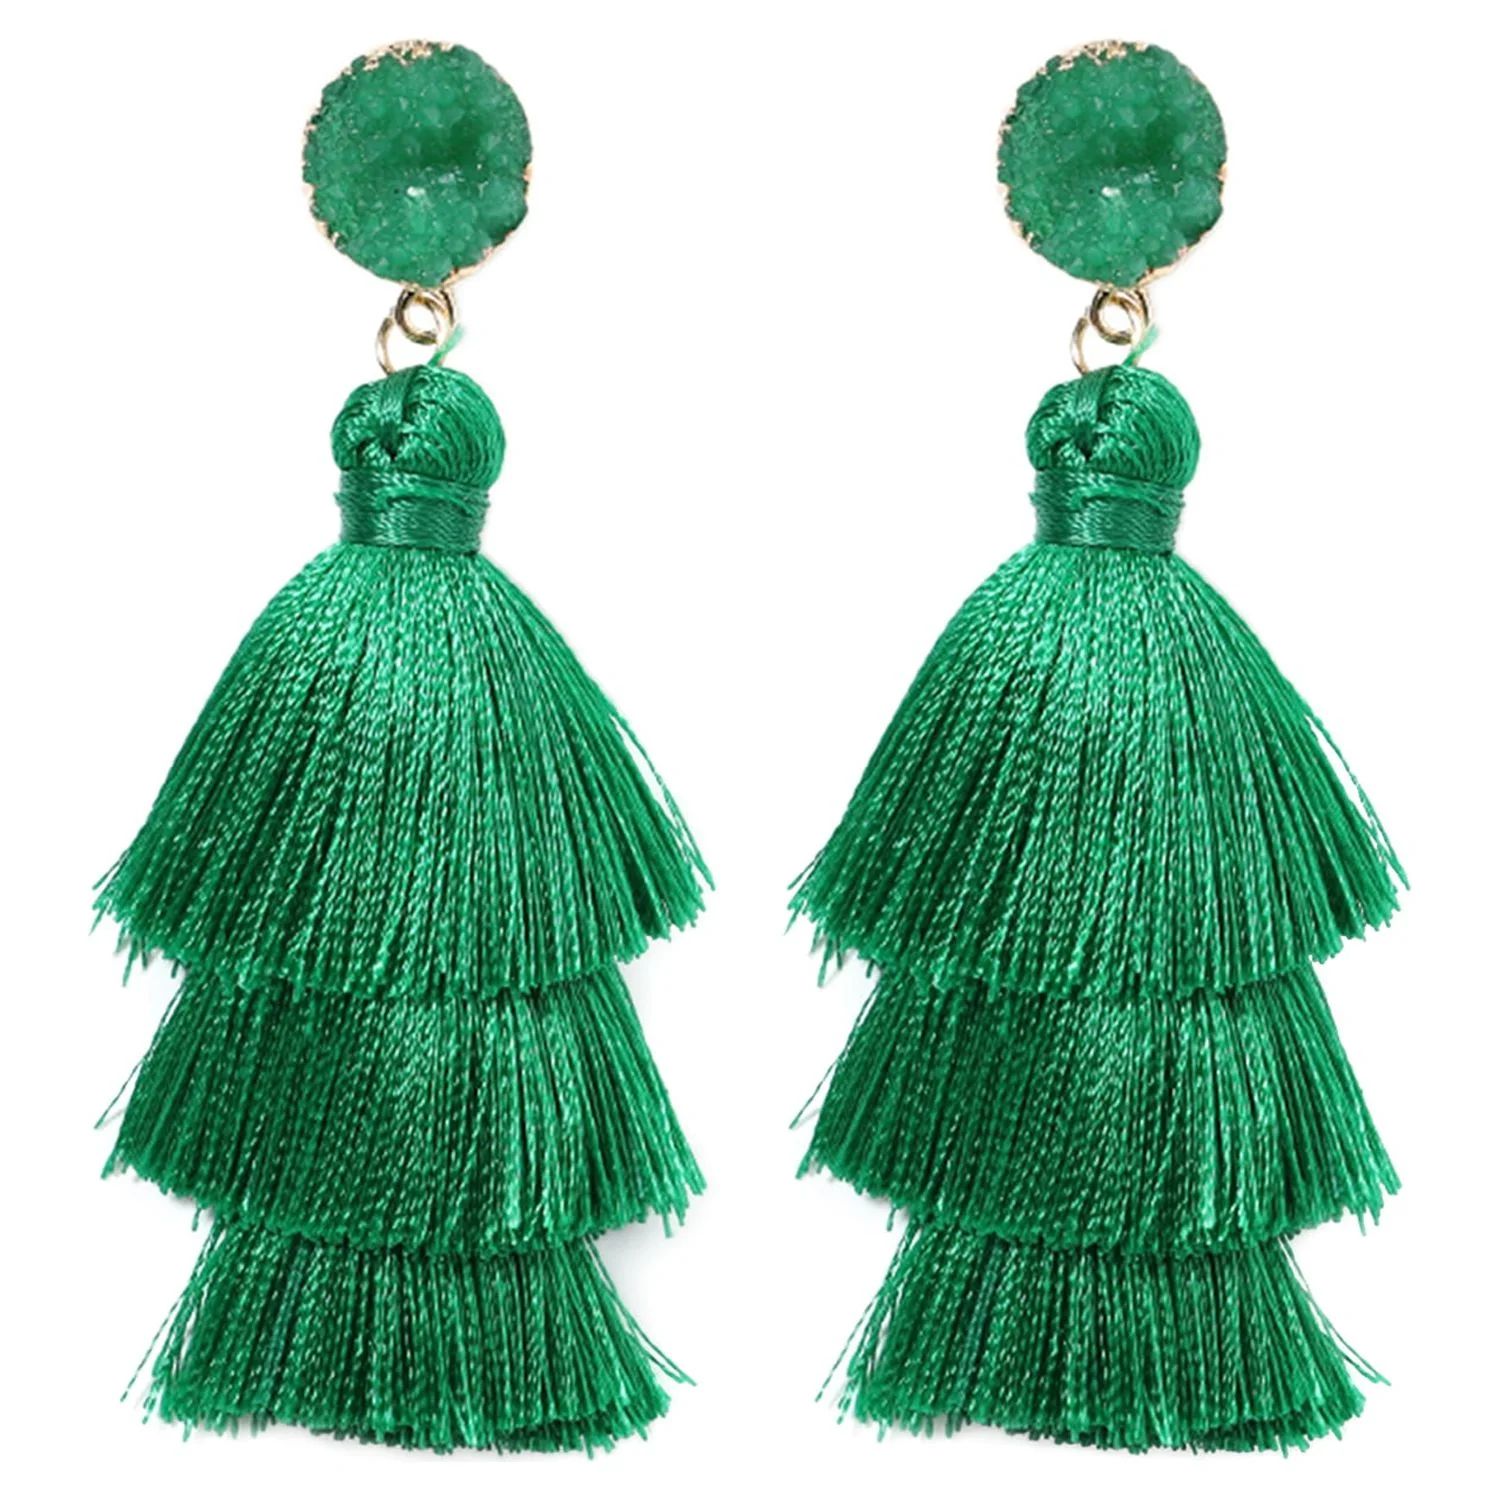 Green Tassel Earrings for Women | Colorful Layered Tassle 3 Tier Bohemian Earrings | Dangle Drop ... | Walmart (US)